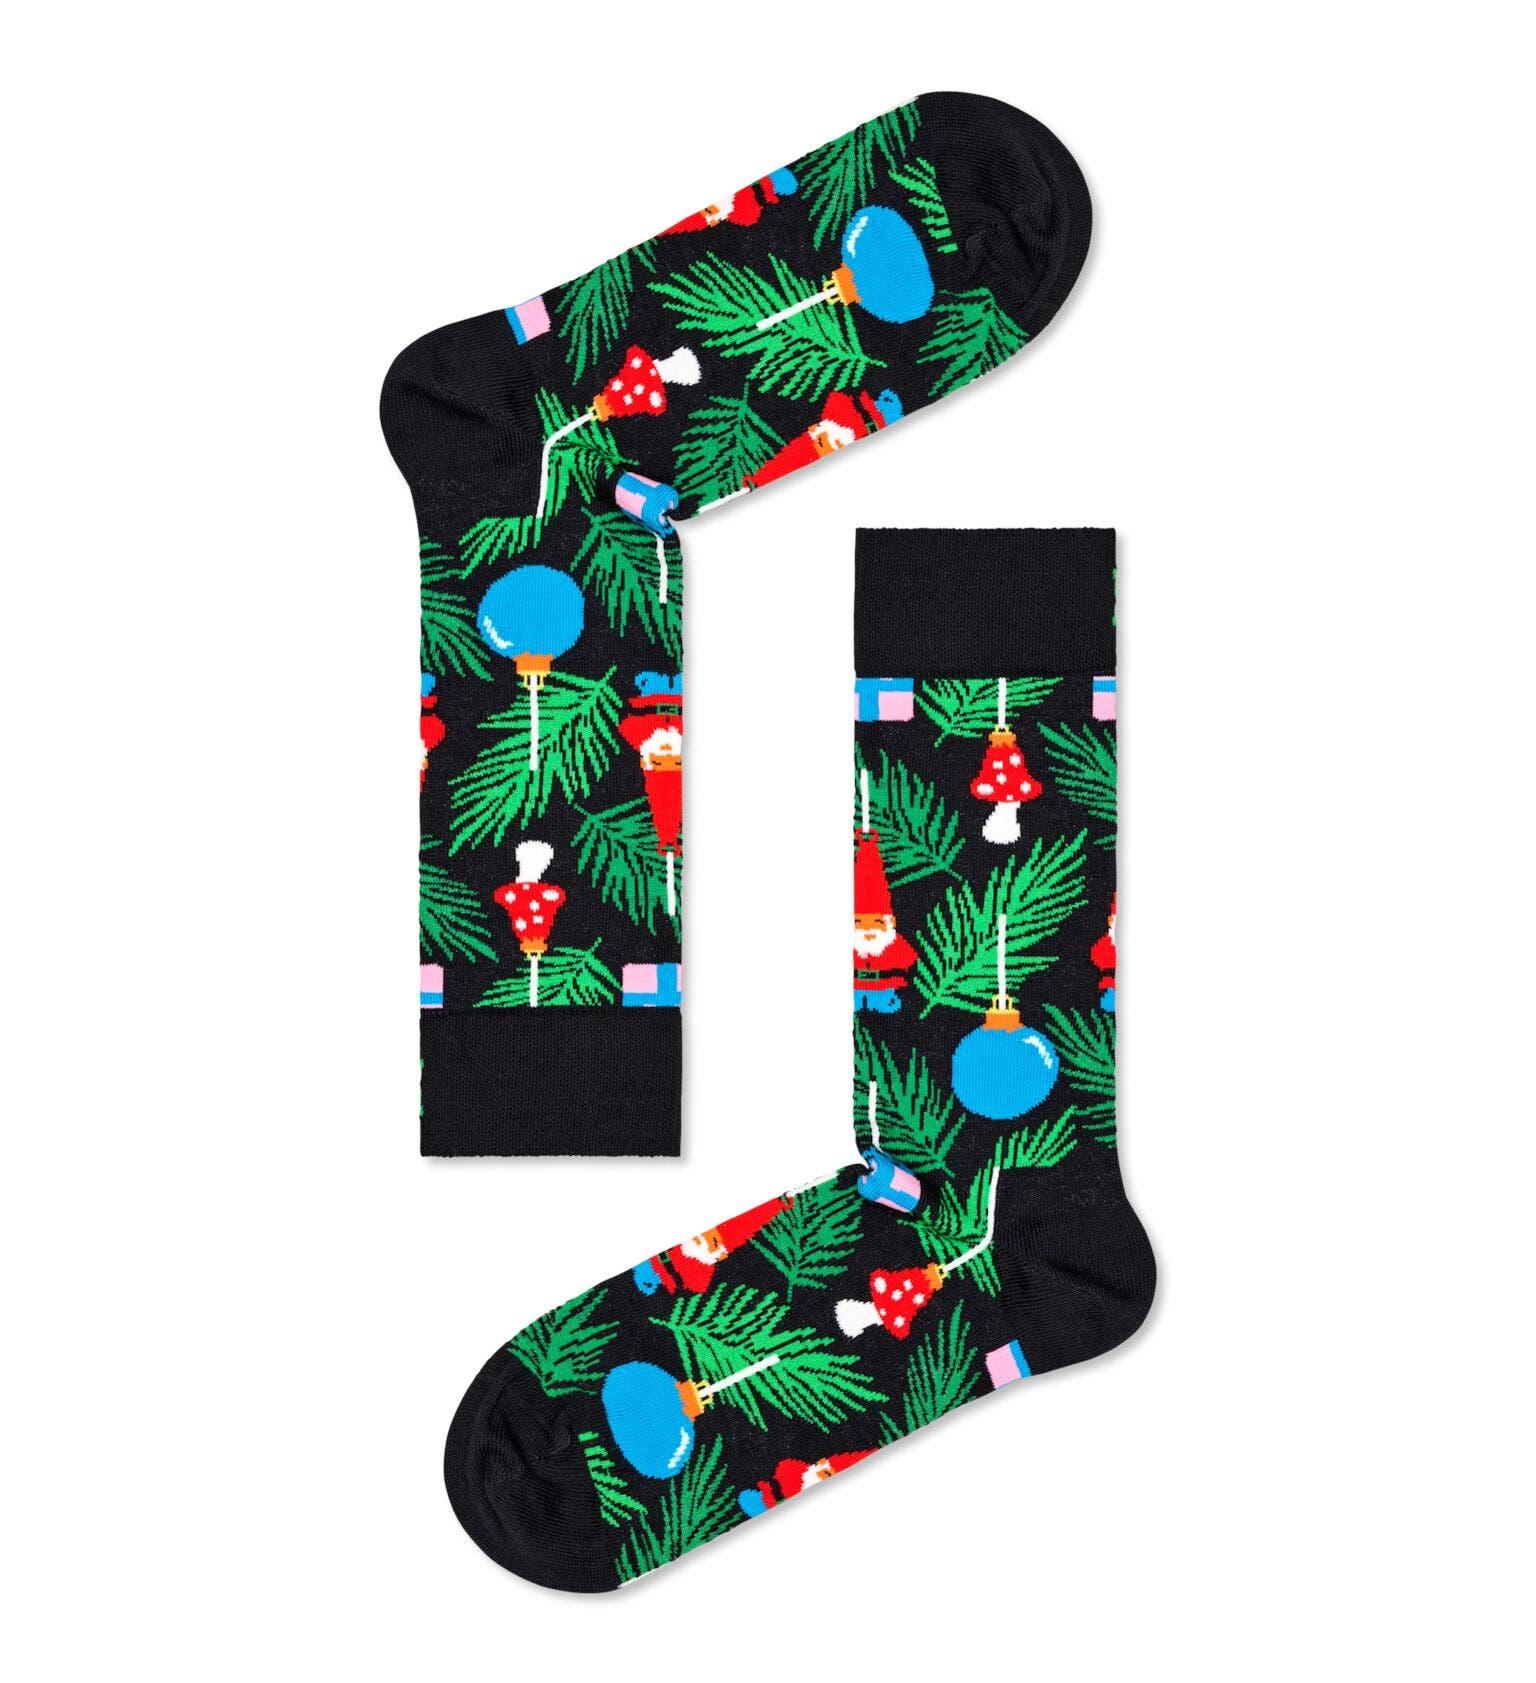 Svarta strumpor med julgranspynt på från Happy Socks